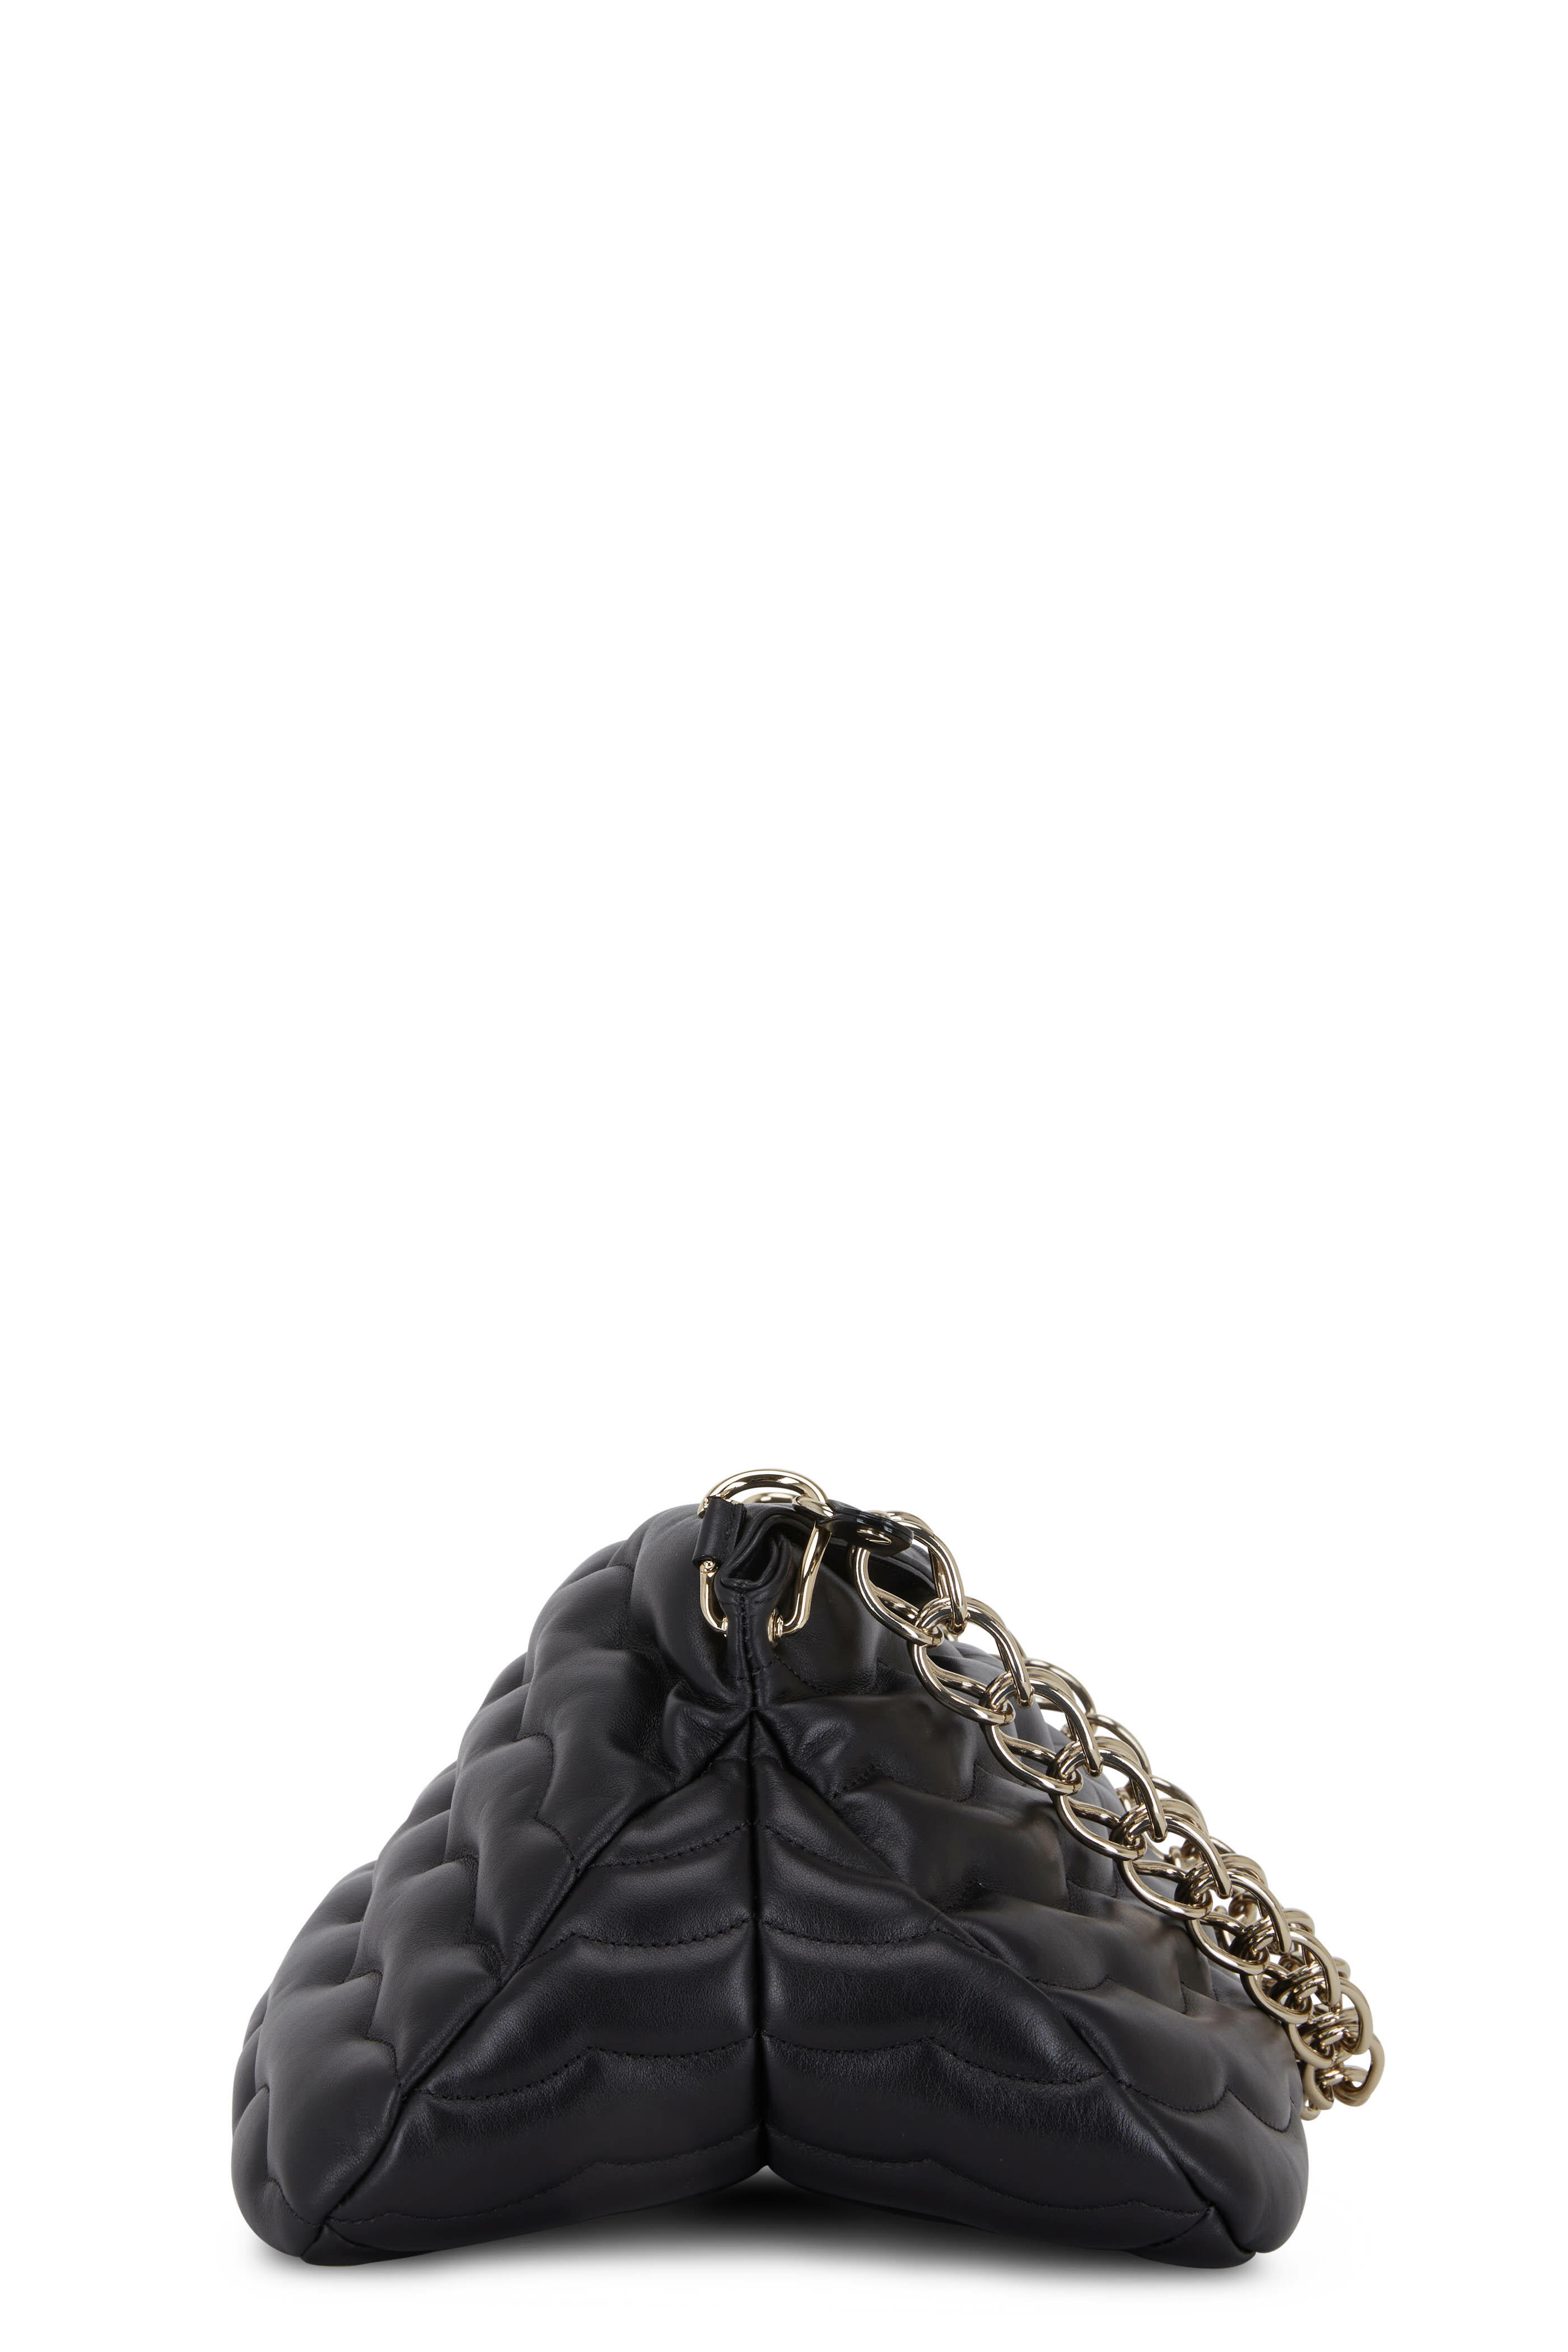 Chloé Medium Juana Shoulder Bag - Farfetch